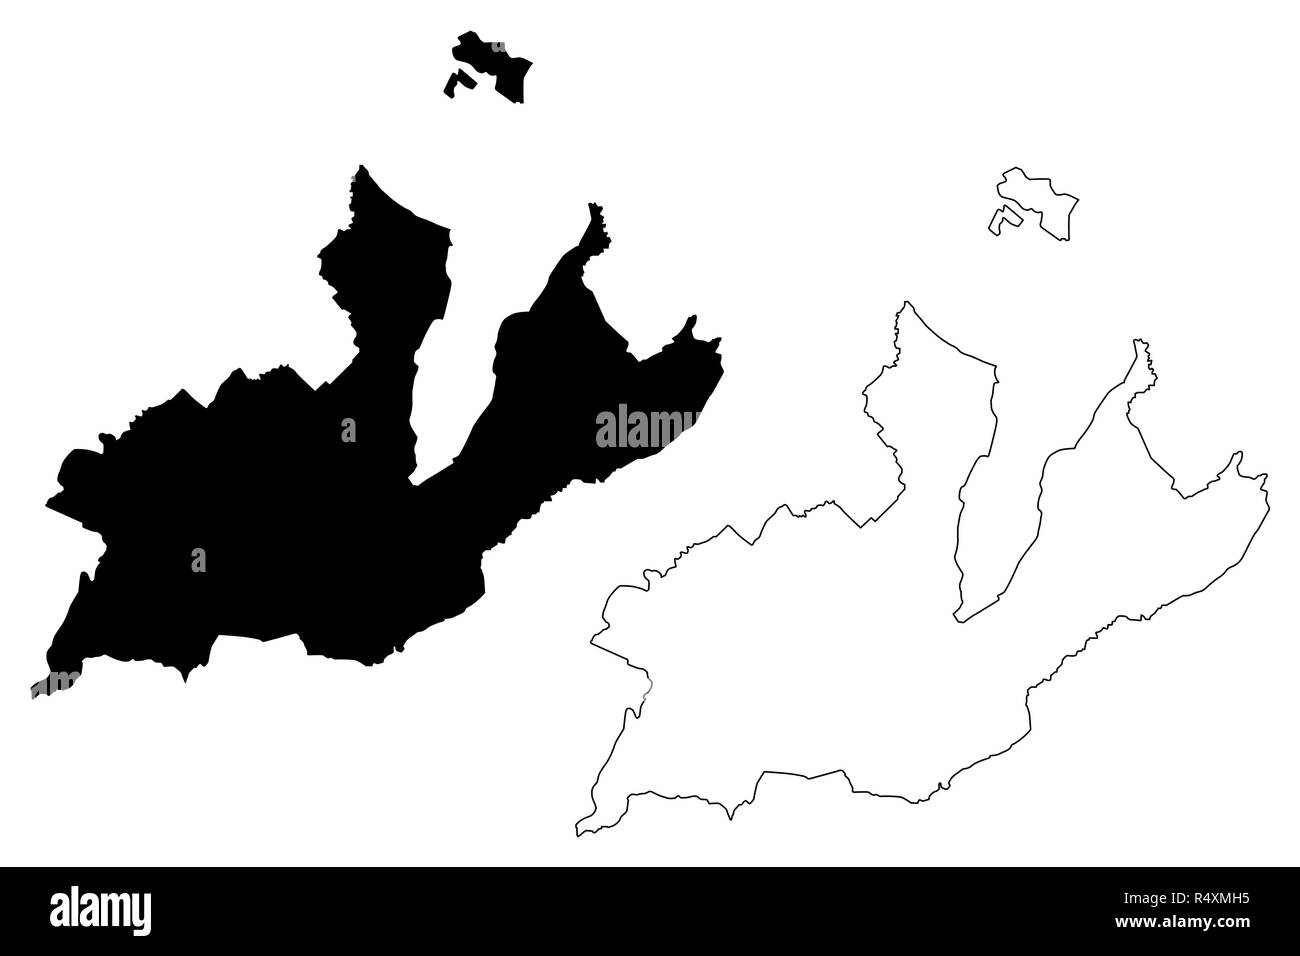 Genf (Kantone der Schweiz Schweizer Kantone, Bund) Karte Vektor-illustration, kritzeln Skizze Republik und Kanton Genf Karte anzeigen Stock Vektor